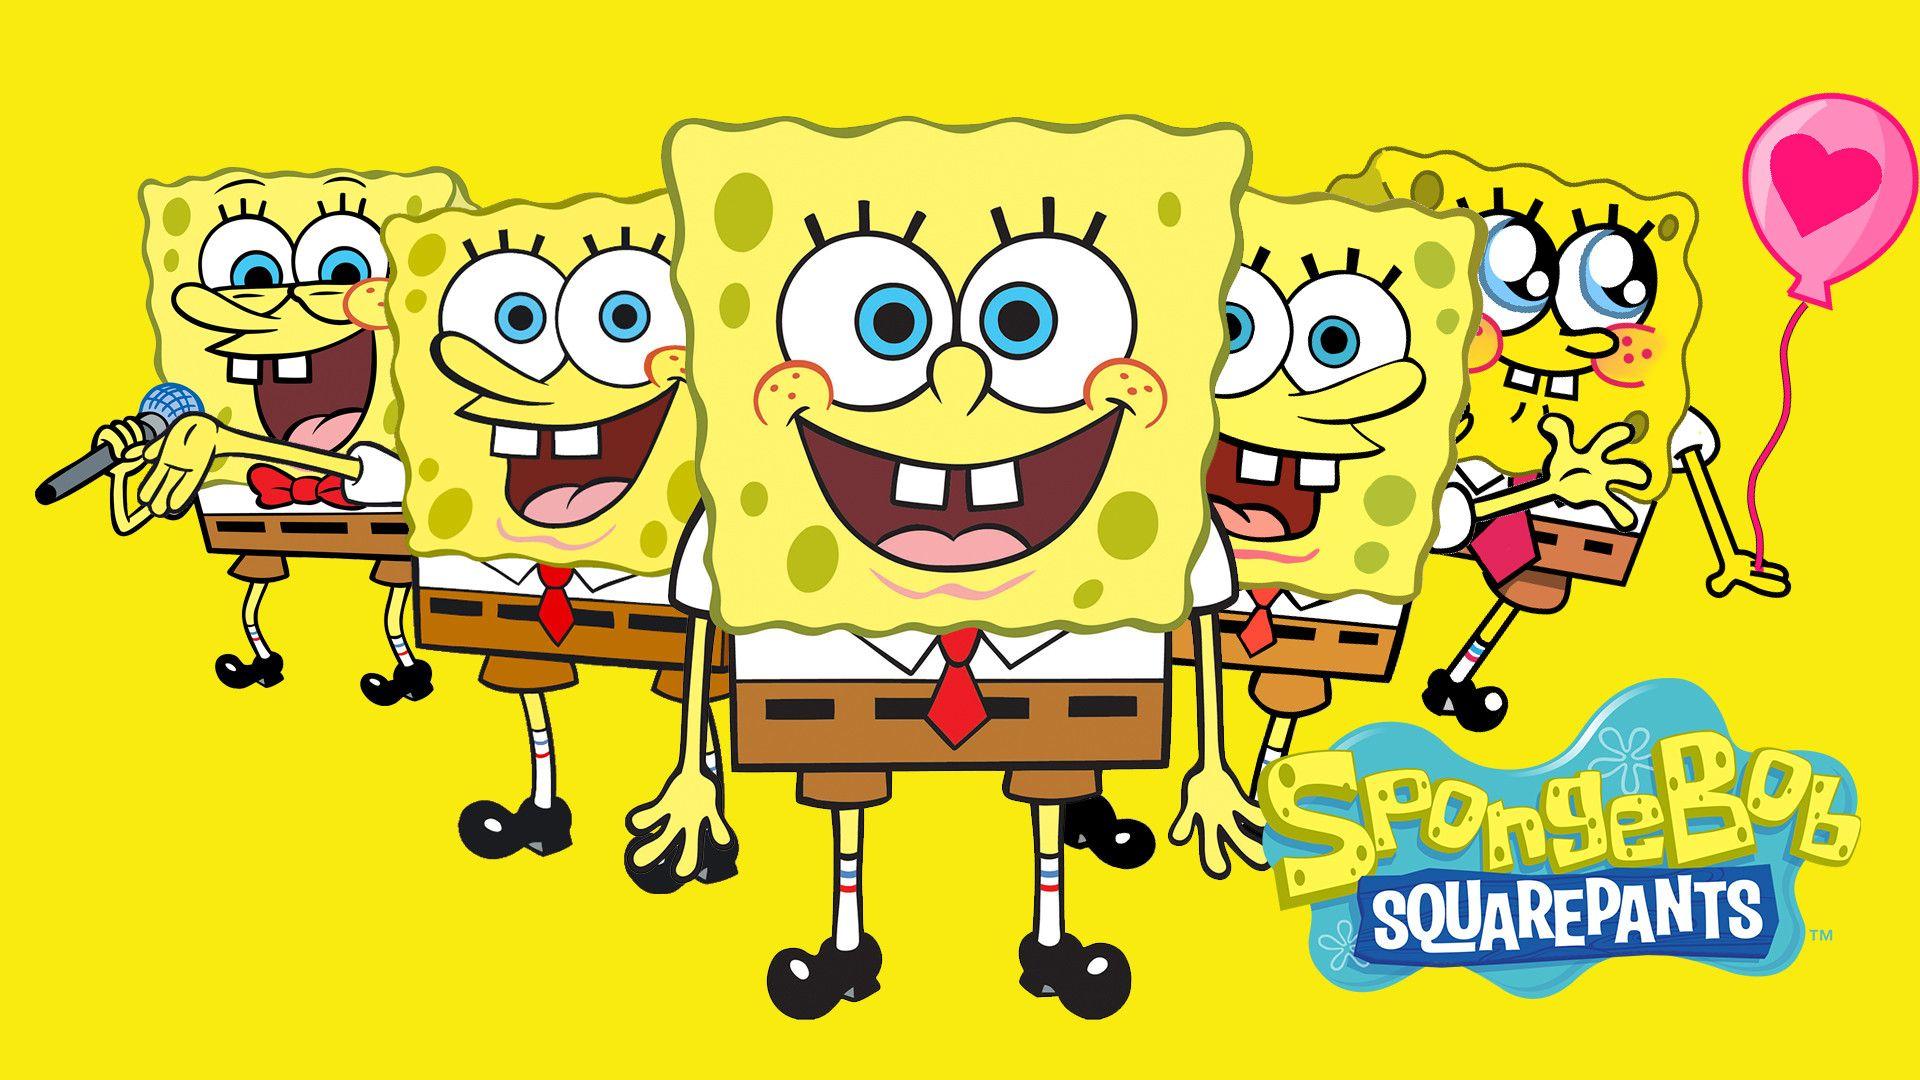 SpongeBob SquarePants Wallpapers - Top